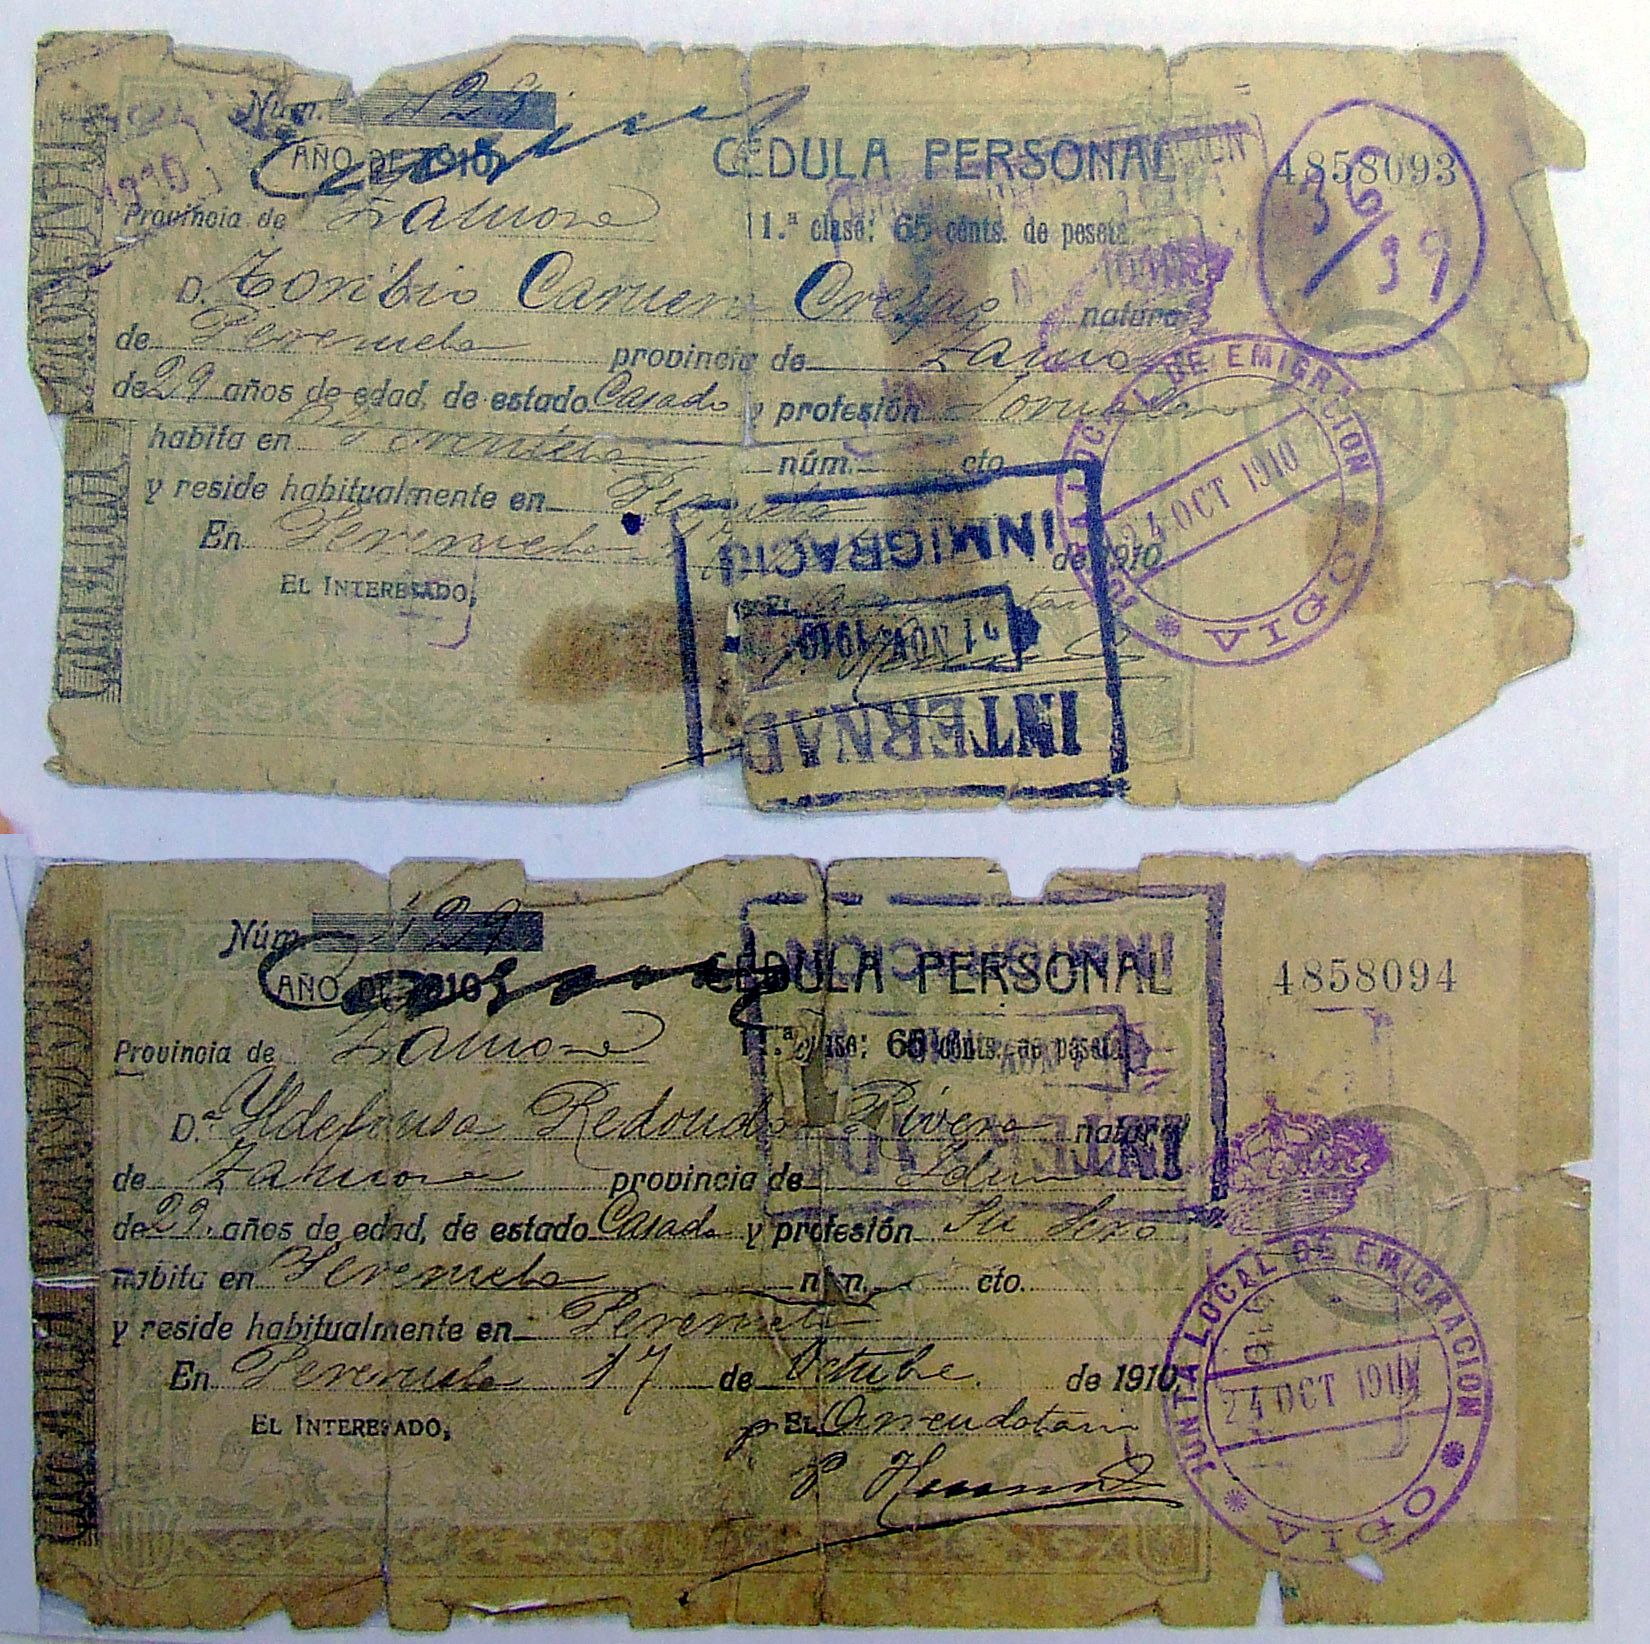 Cédulas de identificación de Toribio y Alfonsa (inscrita erroneamente como Ildefonsa), con el sello de enbarque de Vigo